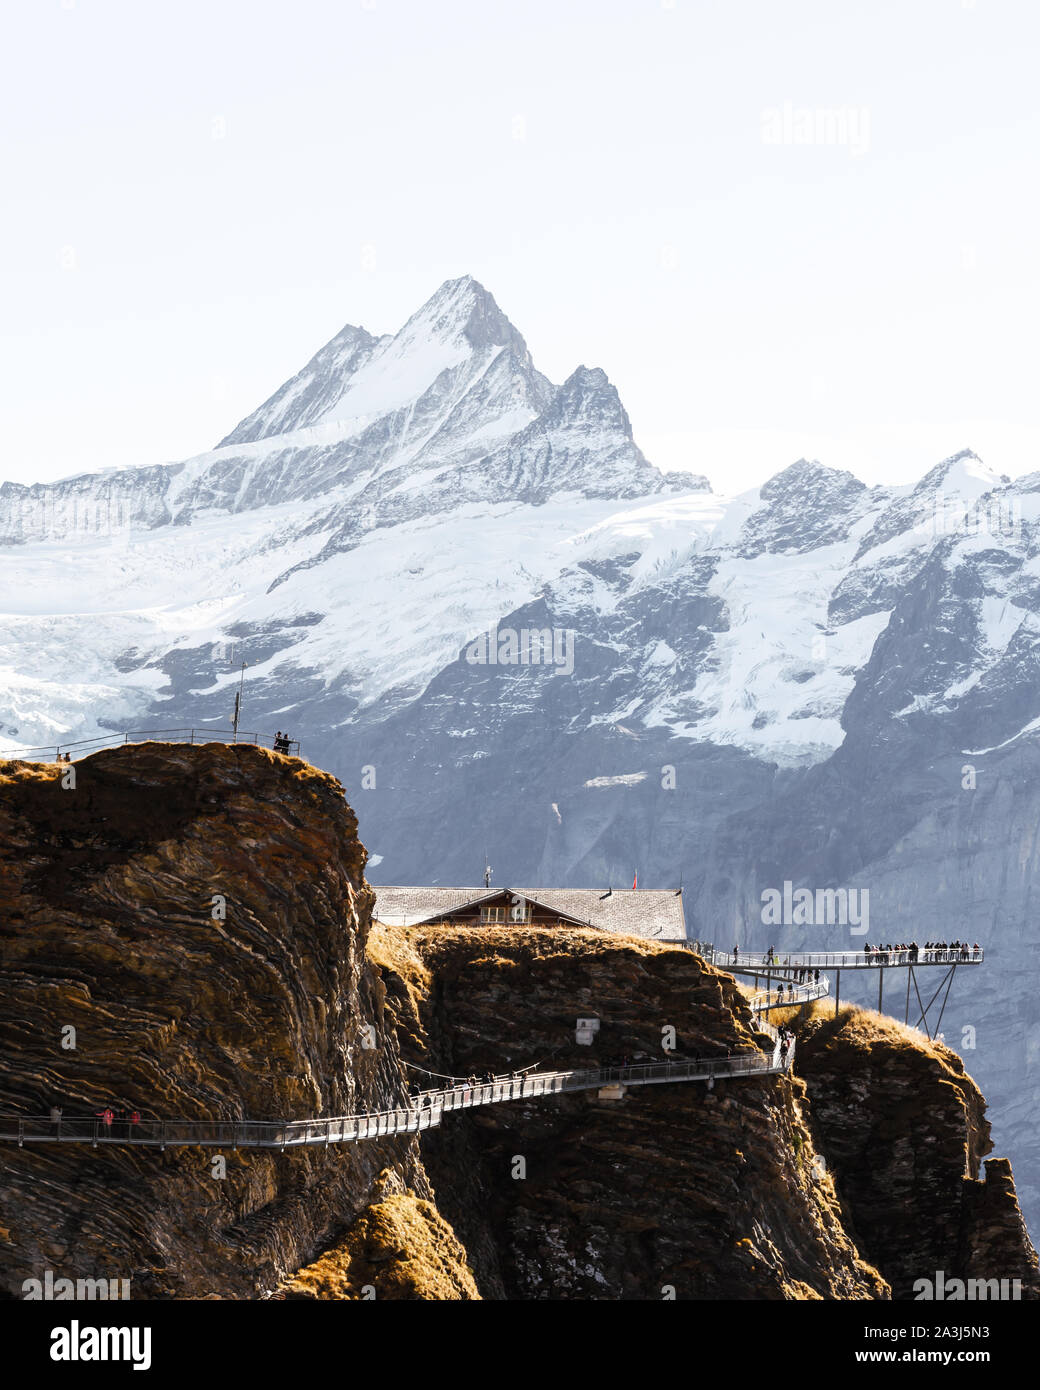 Estremo punto di vista sulla cima di Grindelwald prima funivia nelle Alpi Svizzere. Snowy Schreckhorn picco di montagna sullo sfondo. Alpi bernesi, Svizzera, Europa. Foto Stock